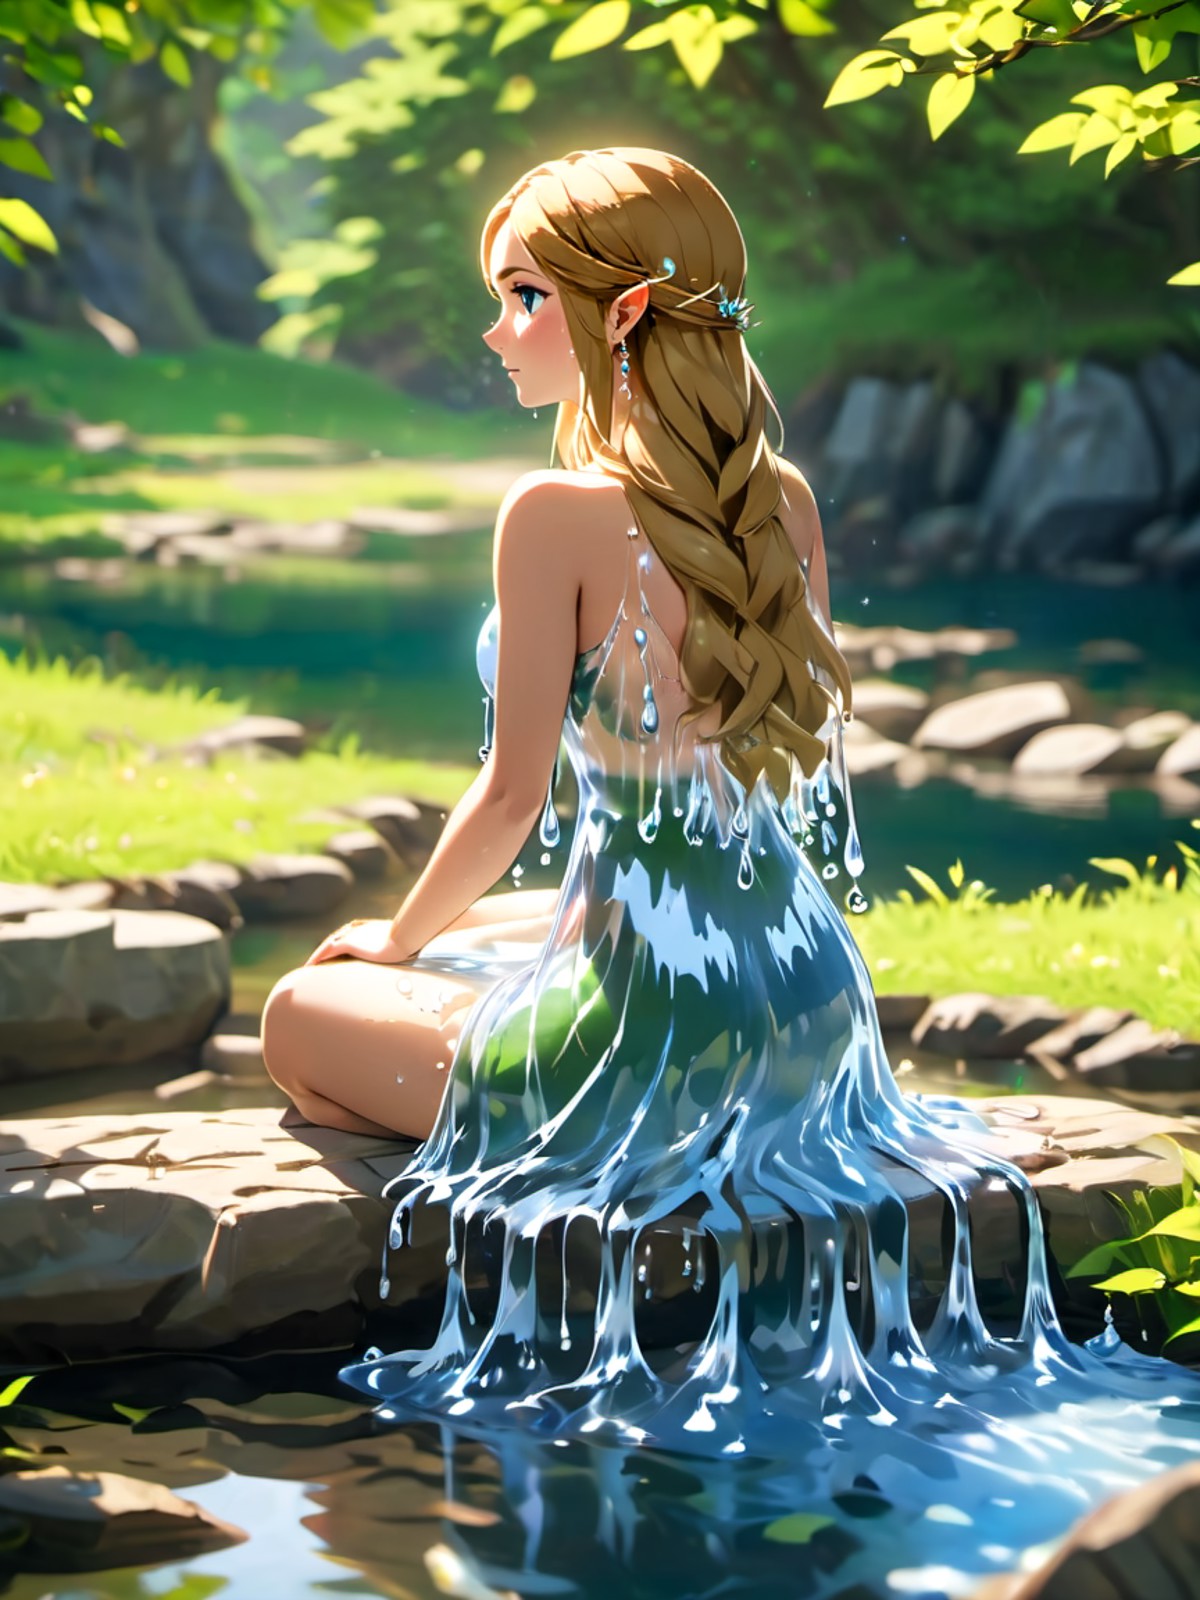 Legend of Zelda style beautiful woman wearing a (water dress) Sitting in LâAnse aux Meadows National Historic Site, <lor...